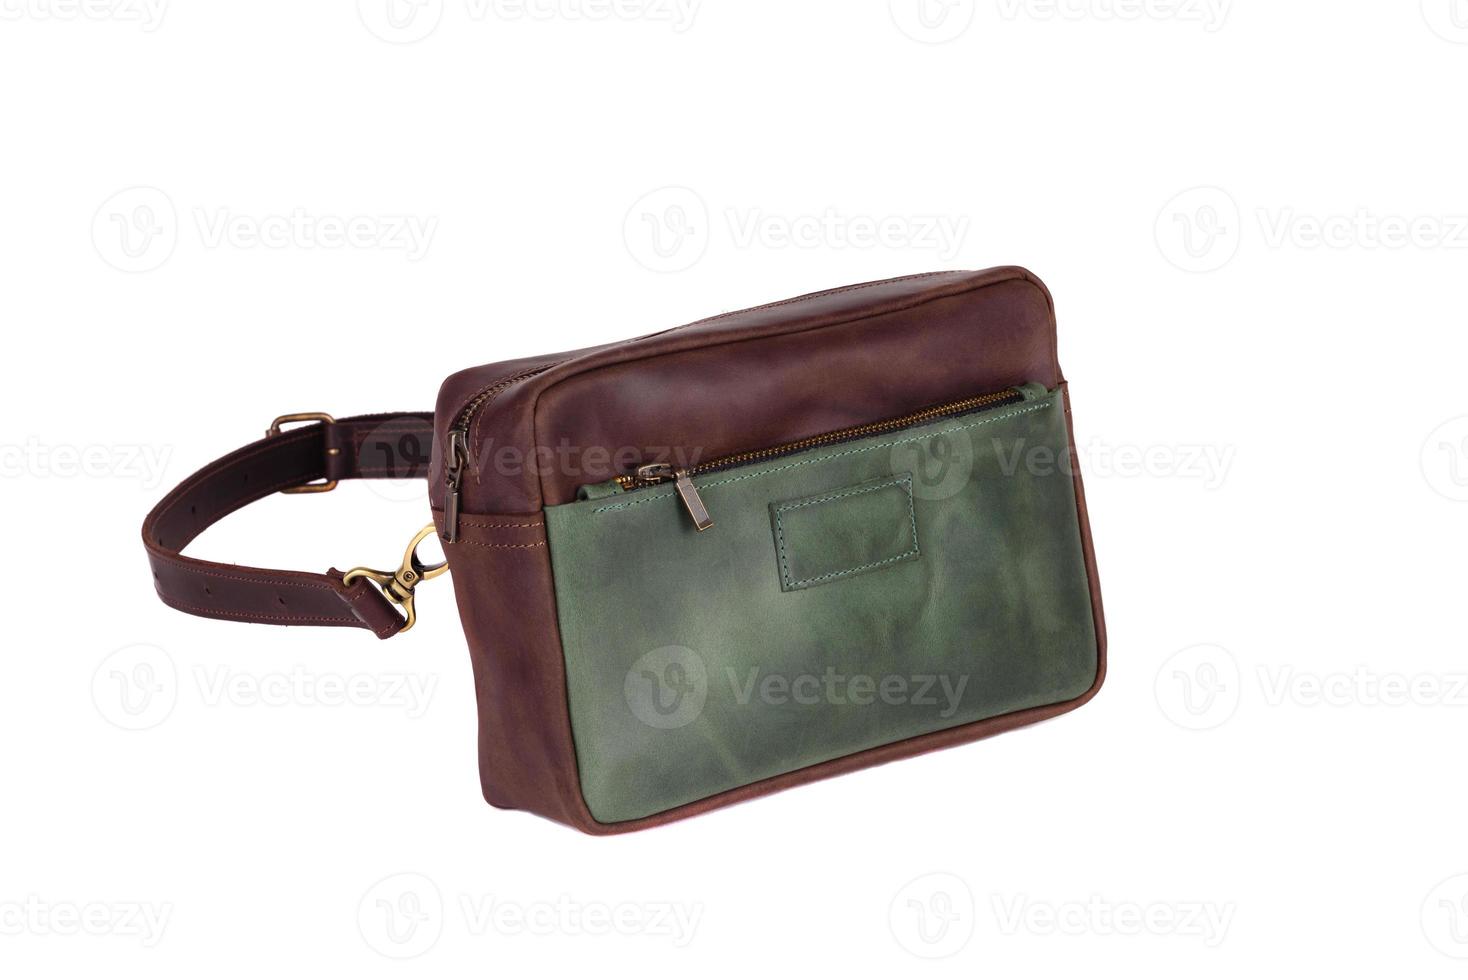 Natural fashion leather handbag isolated on white background photo